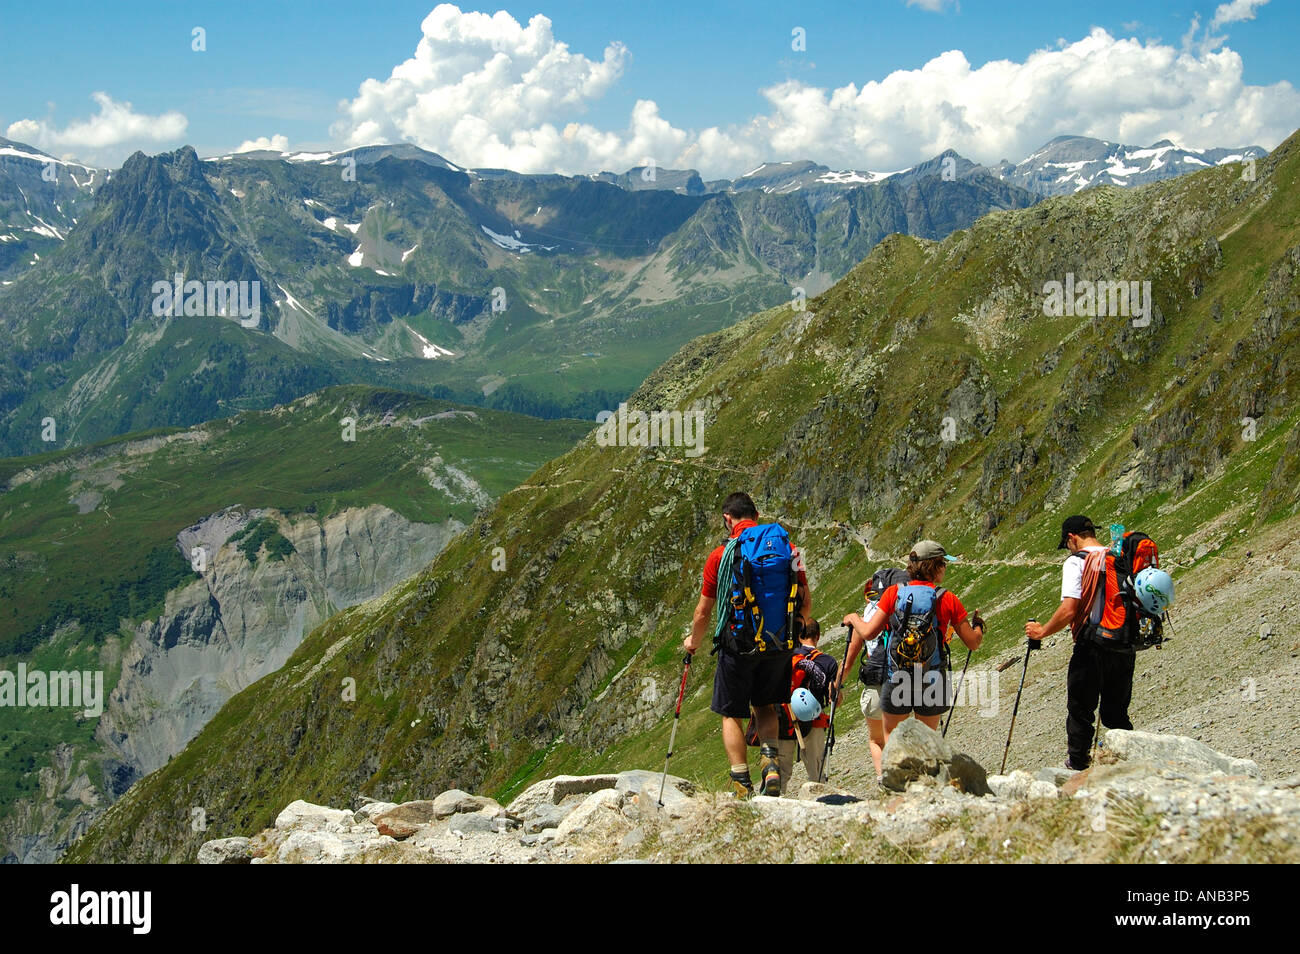 Alpinisten zurück vom Gipfel ins Tal, Savoie Alpen Frankreich Stockfoto